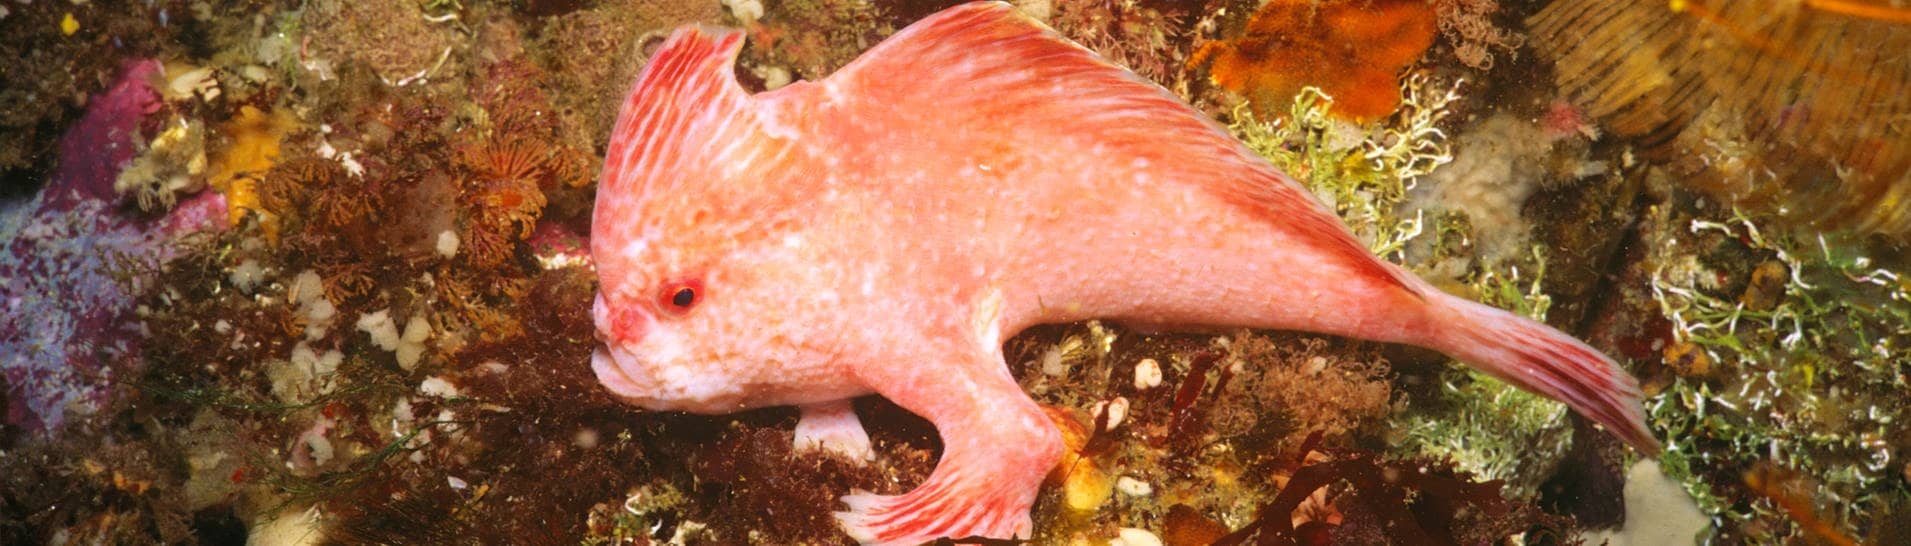 Dieser rosa Handfisch wird bis zu 10 cm lang und ist eine sehr seltene Art. Er hat vorne am Körper Flossen, die wie kleine Hände aussehen.